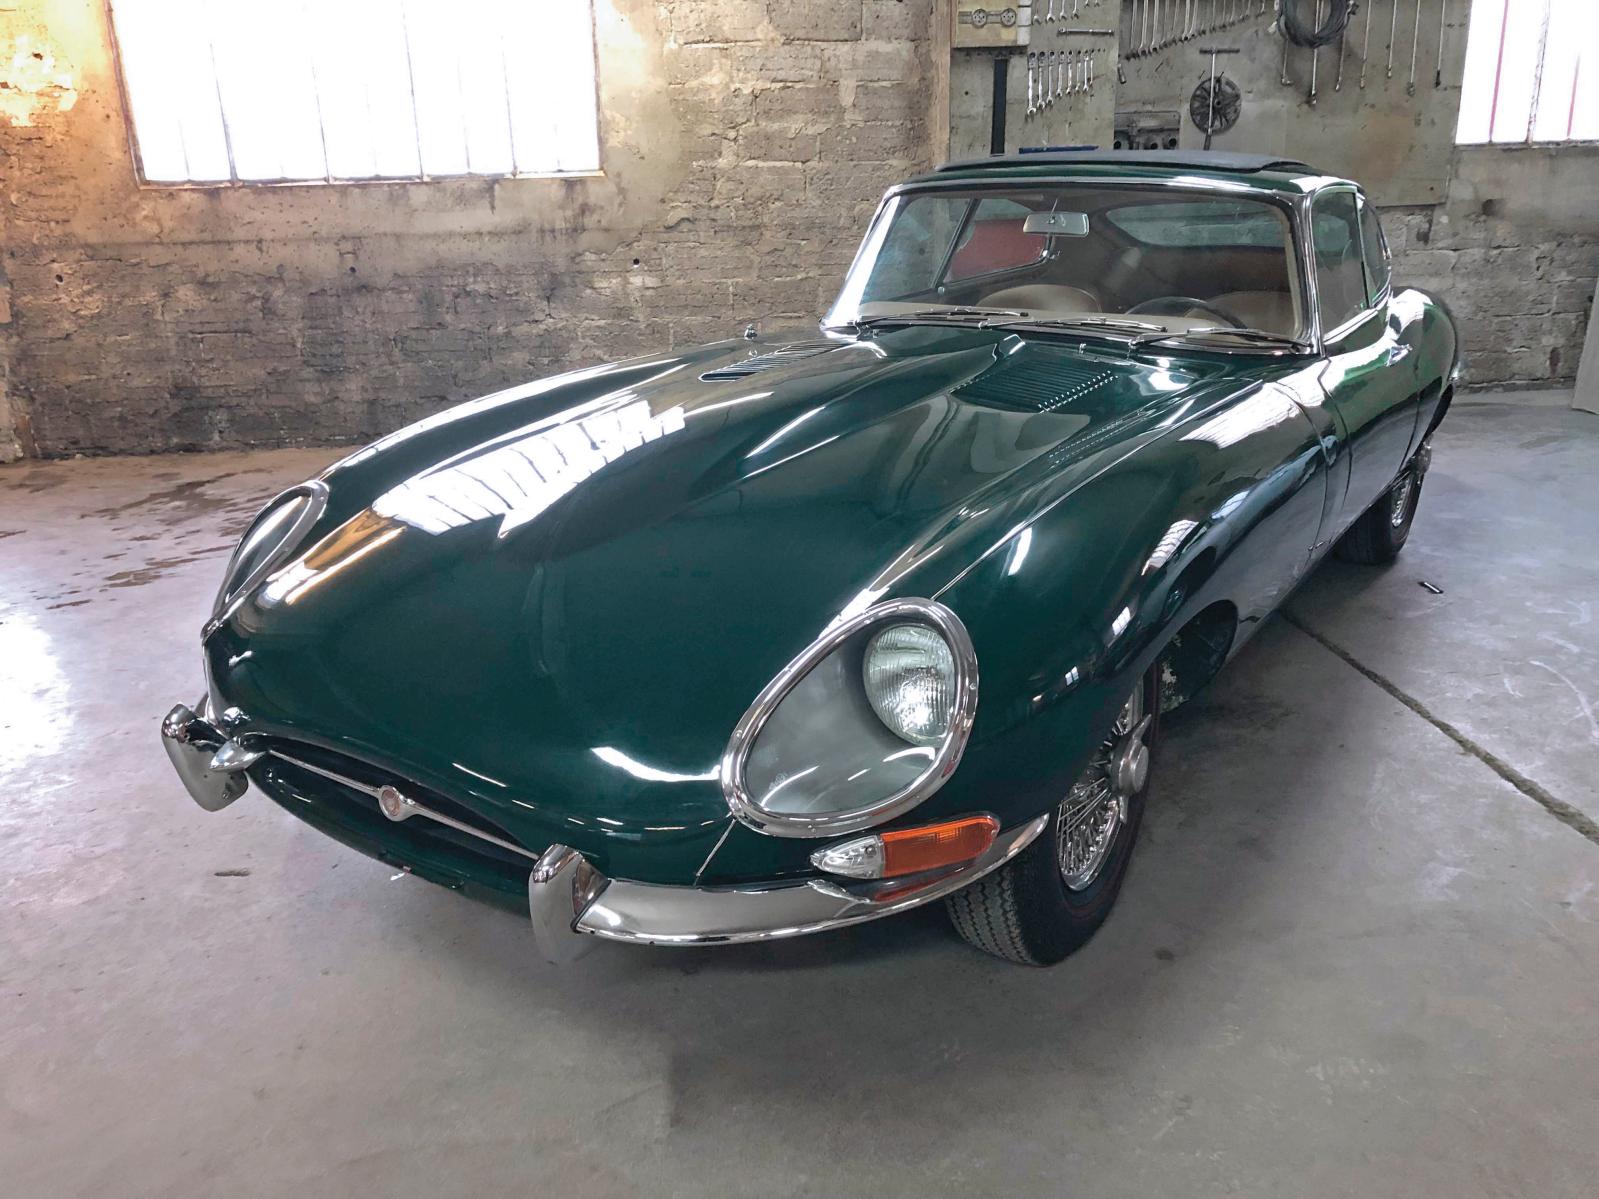 C’était la plus belle Jaguar de la vacation : la Type E Coupé 3,8 litres de 1963, qui emportait dans sa course pas moins de 98 400 €. Et s